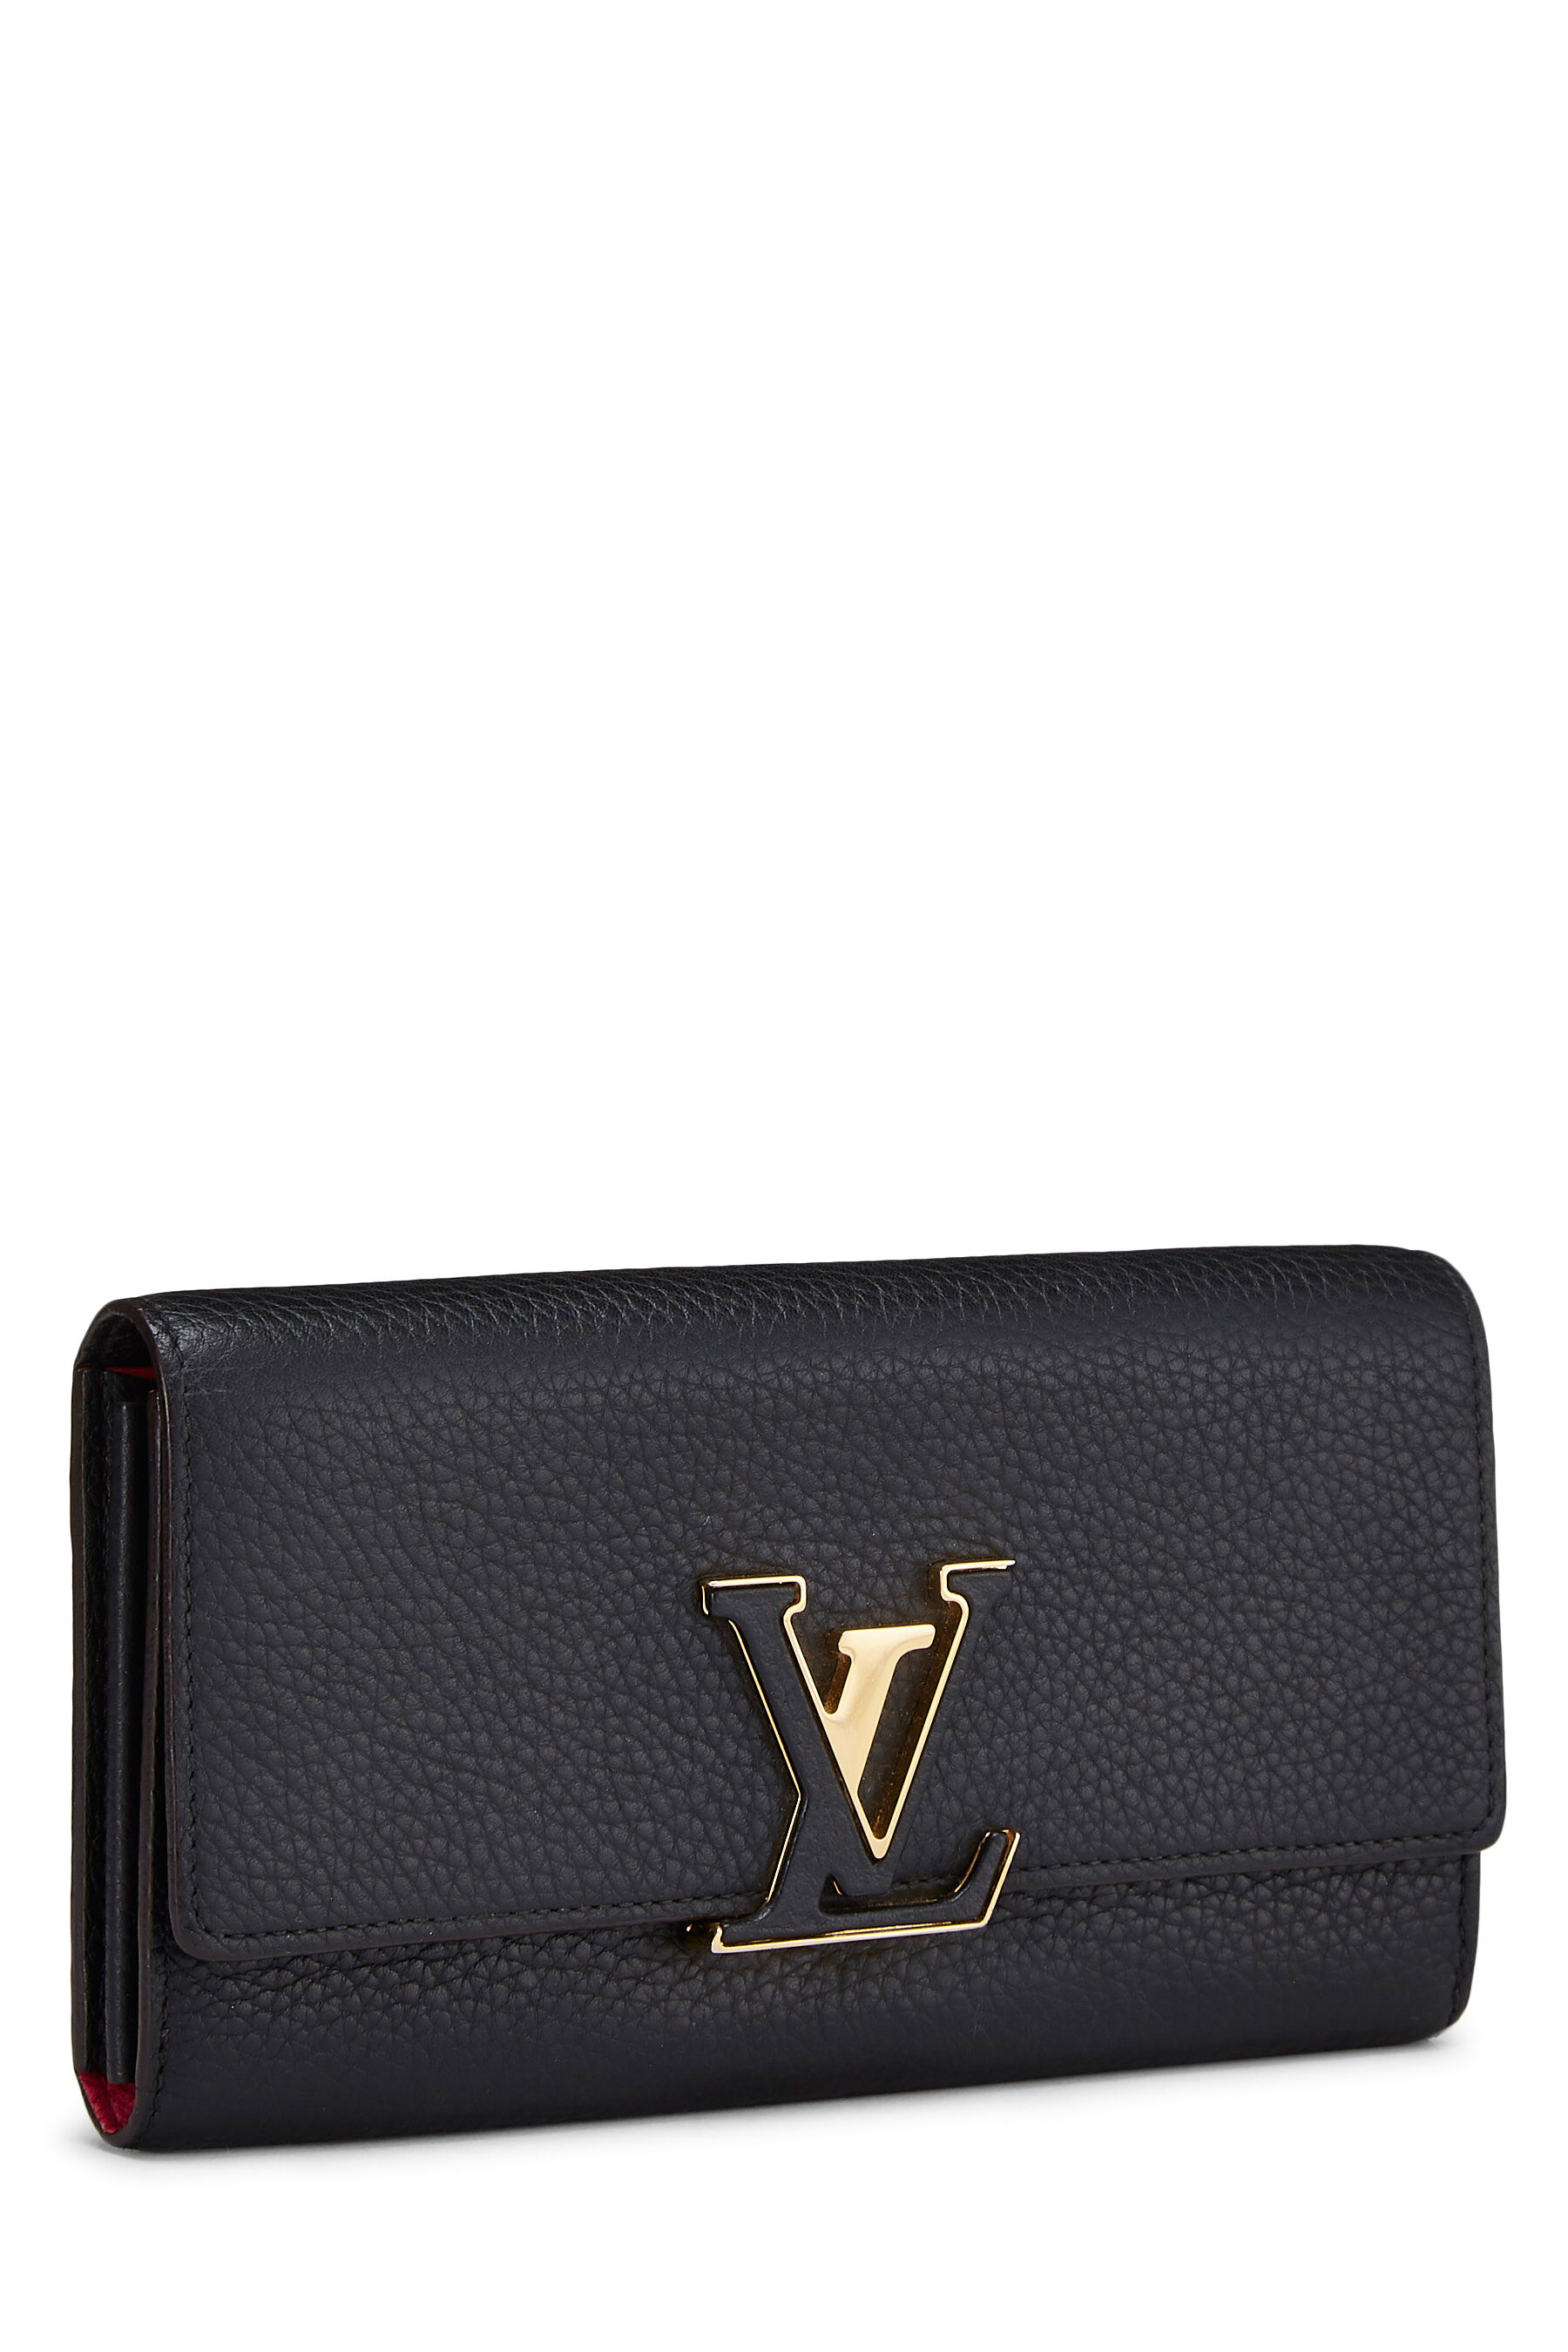 Louis Vuitton 2017 Taurillon Leather Capucines Wallet 